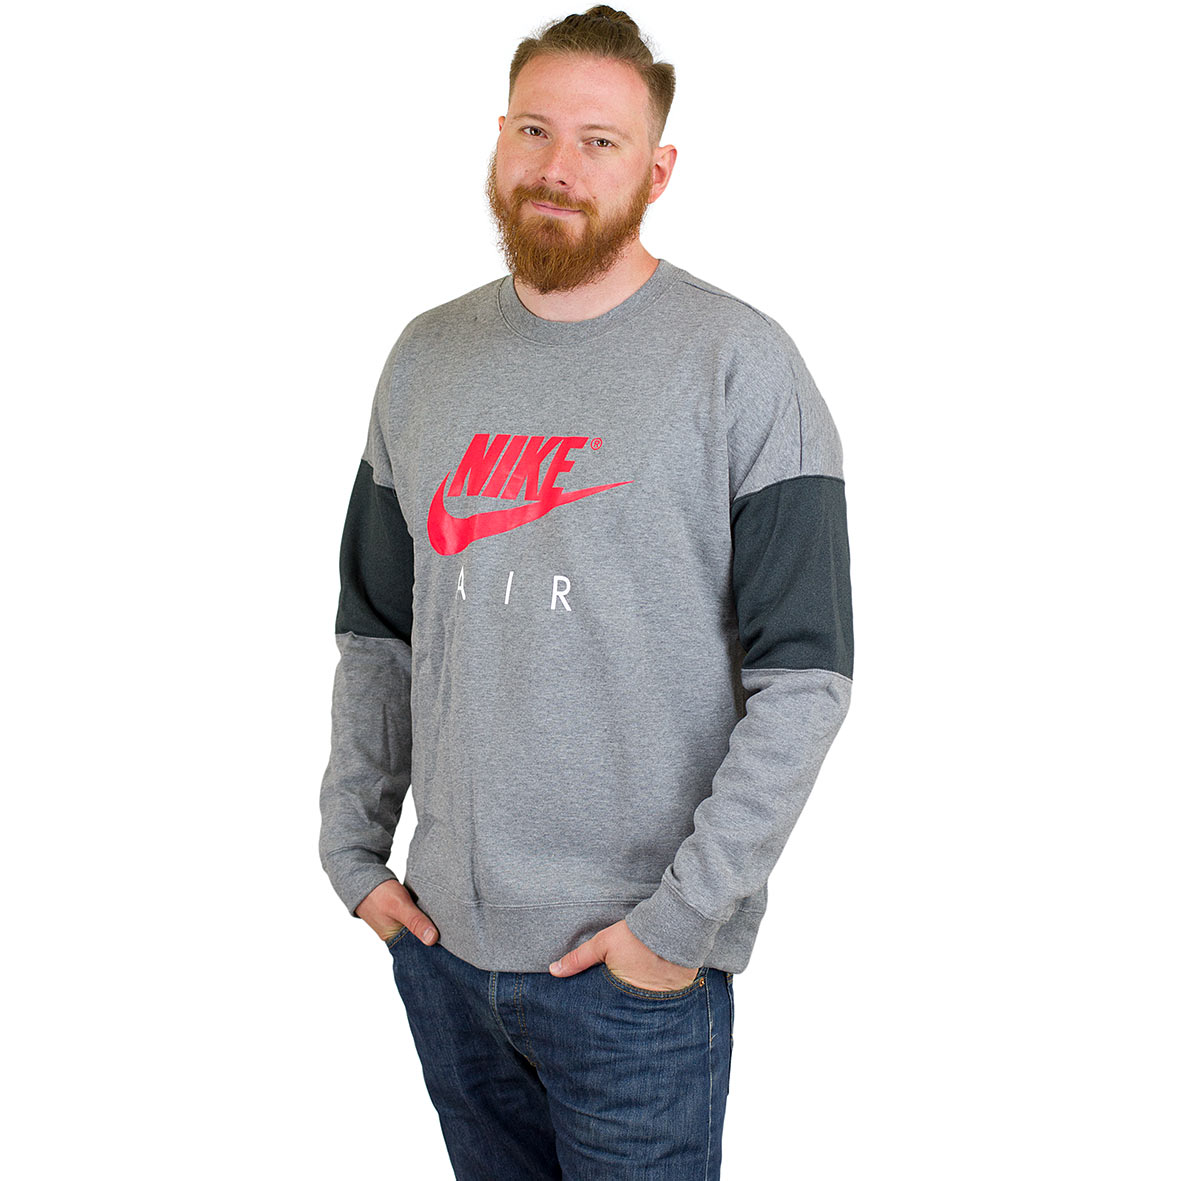 ☆ Nike Sweatshirt Air grau/rot - hier bestellen!